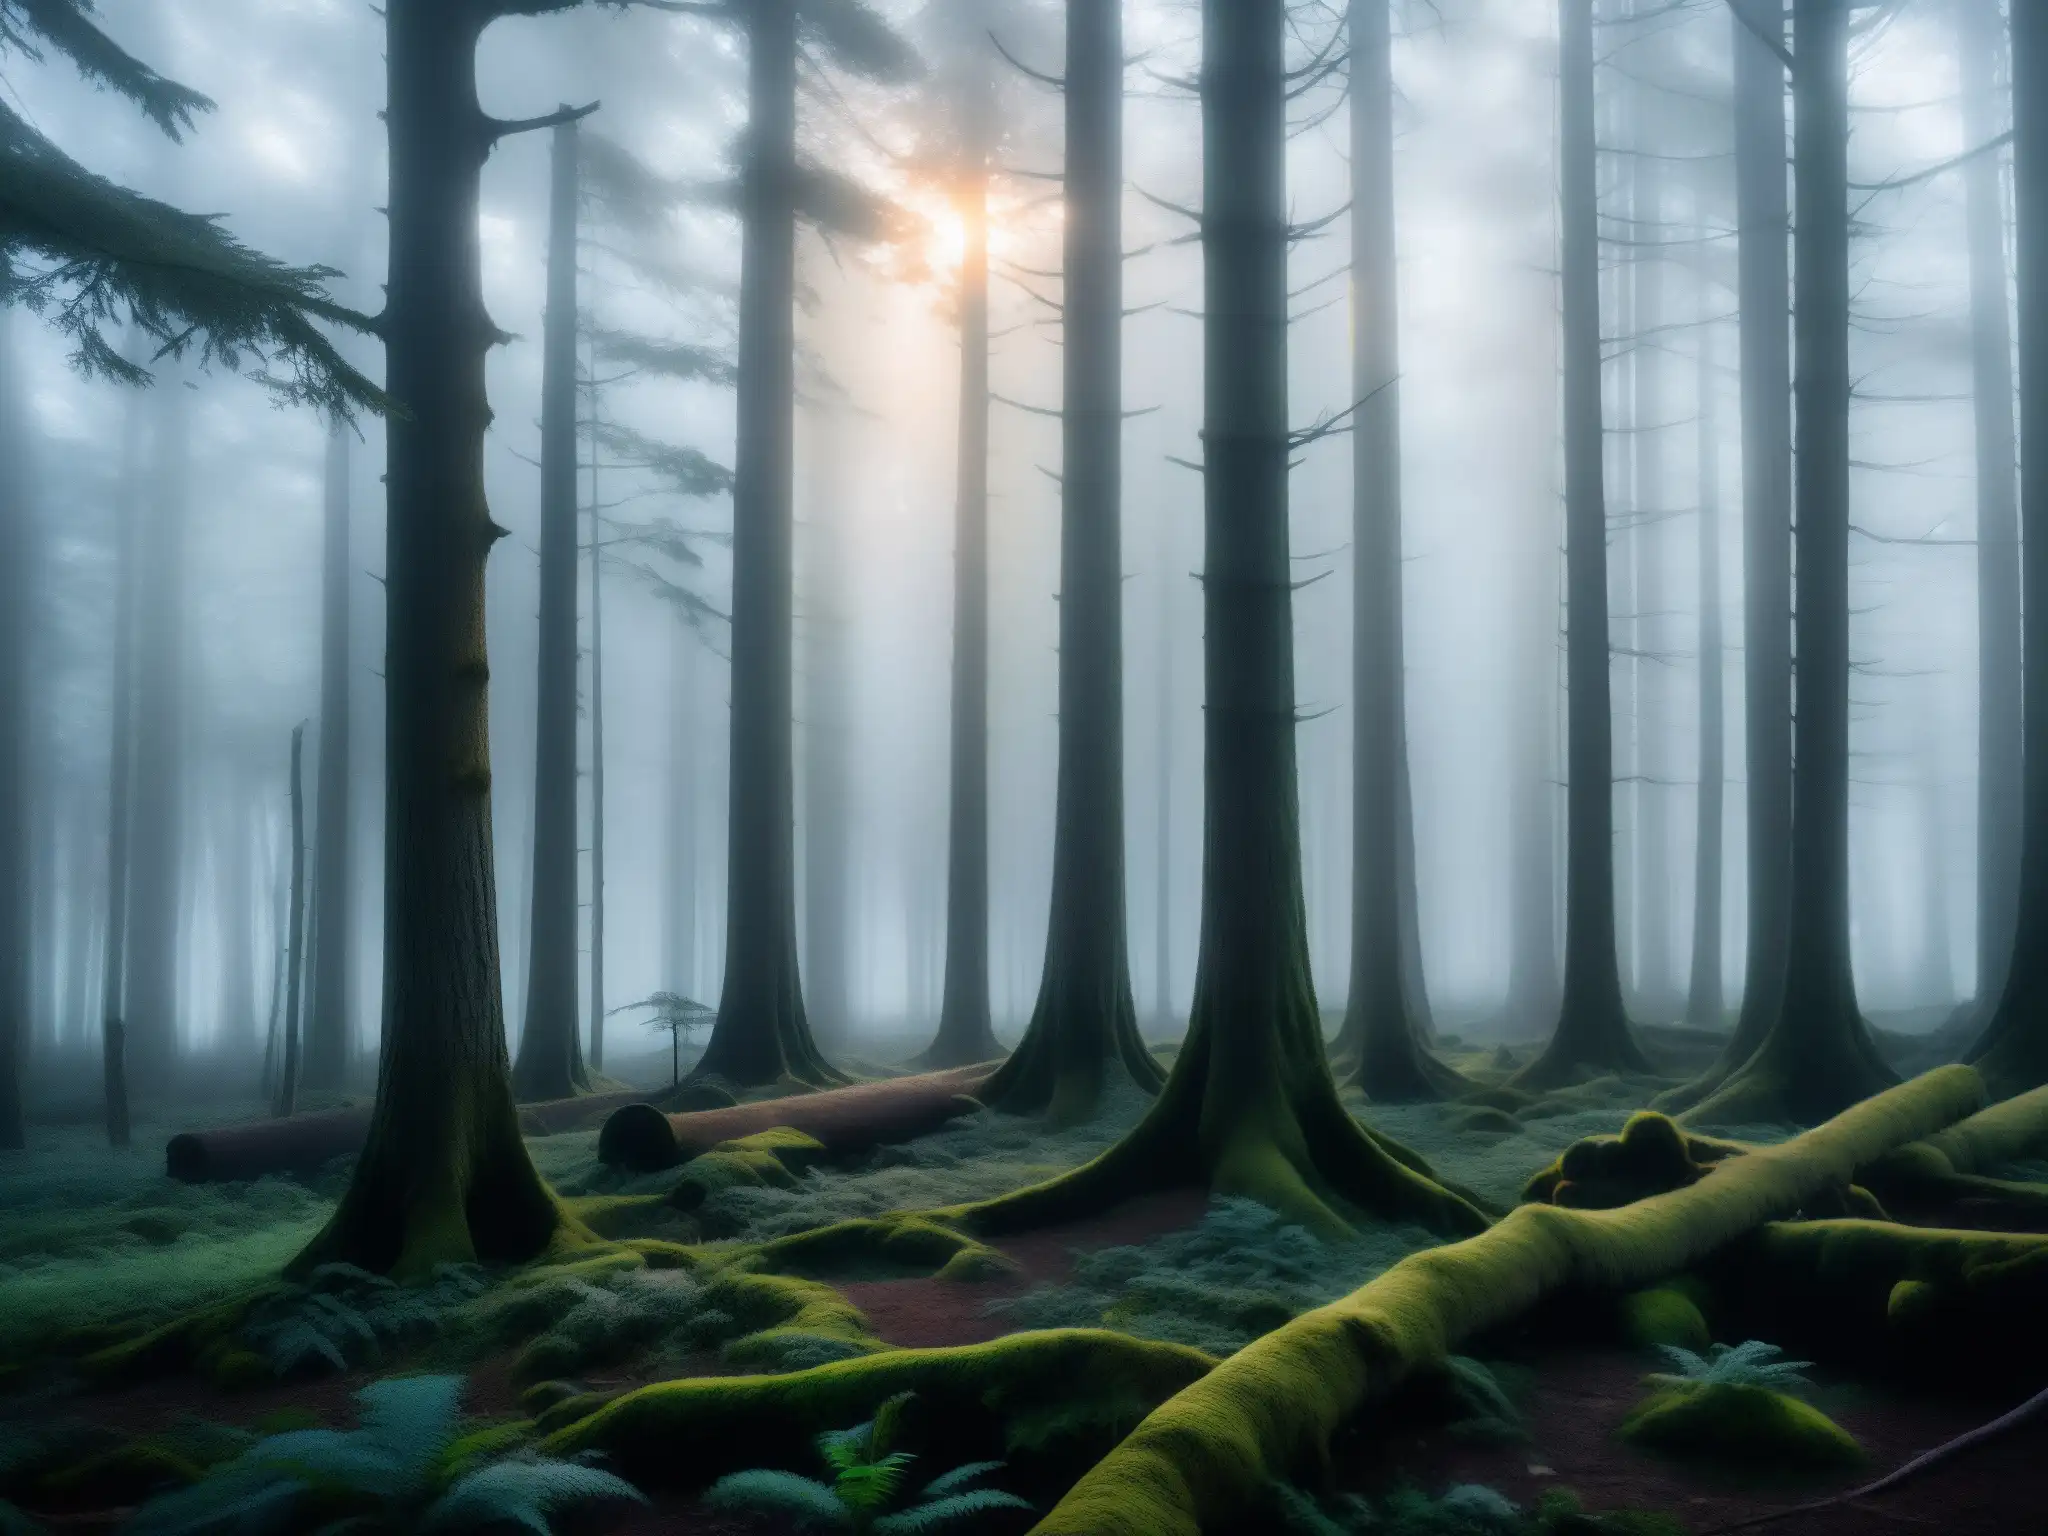 Un bosque denso y misterioso al anochecer, con niebla entre los árboles retorcidos